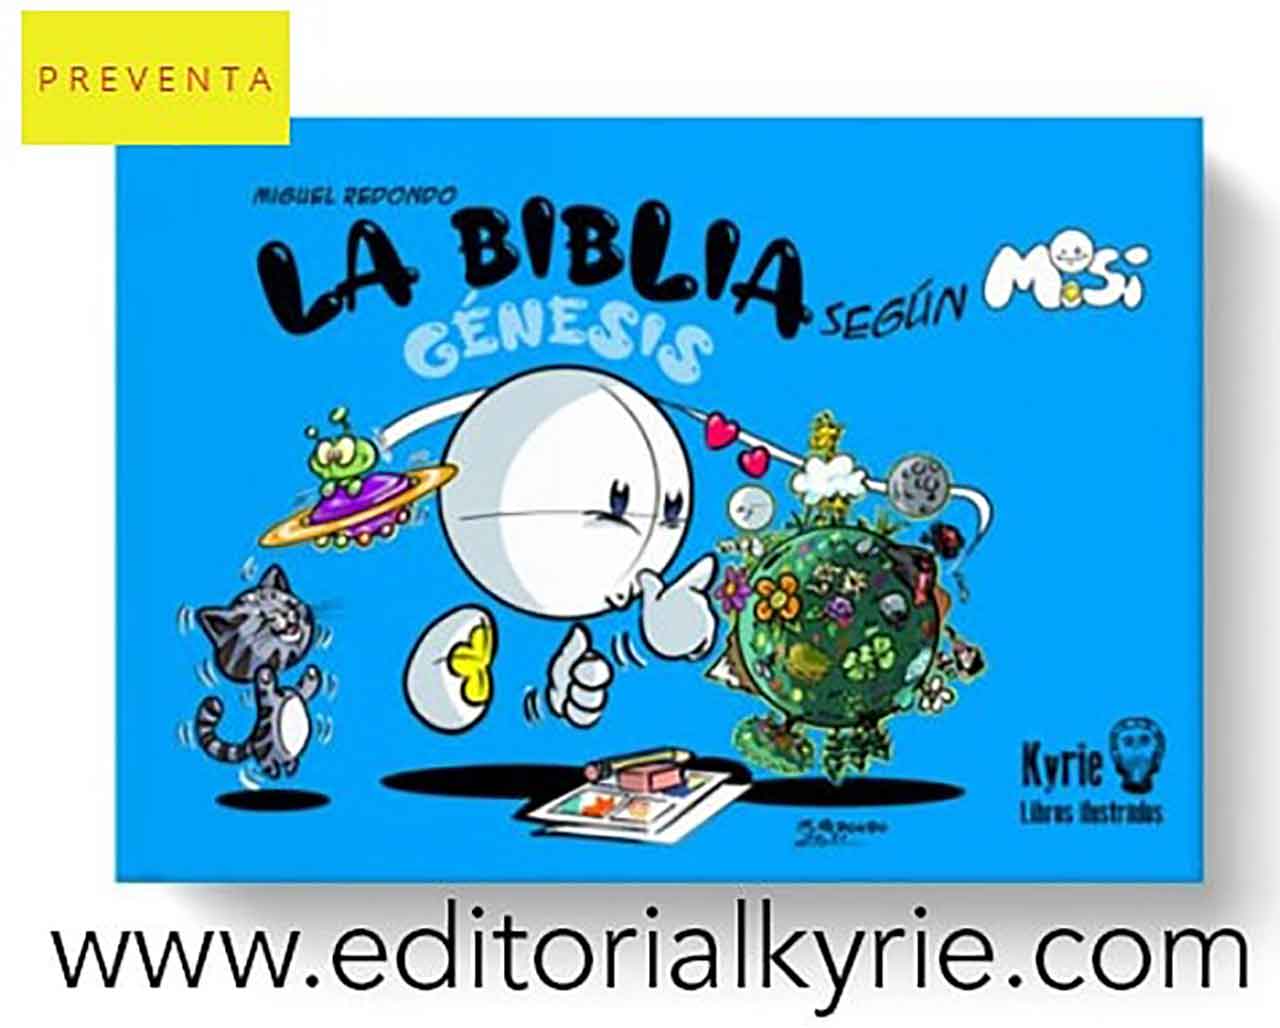 Sale a la luz el comic de Misi del artista católico Miguel Redondo con la Editorial Kyrie